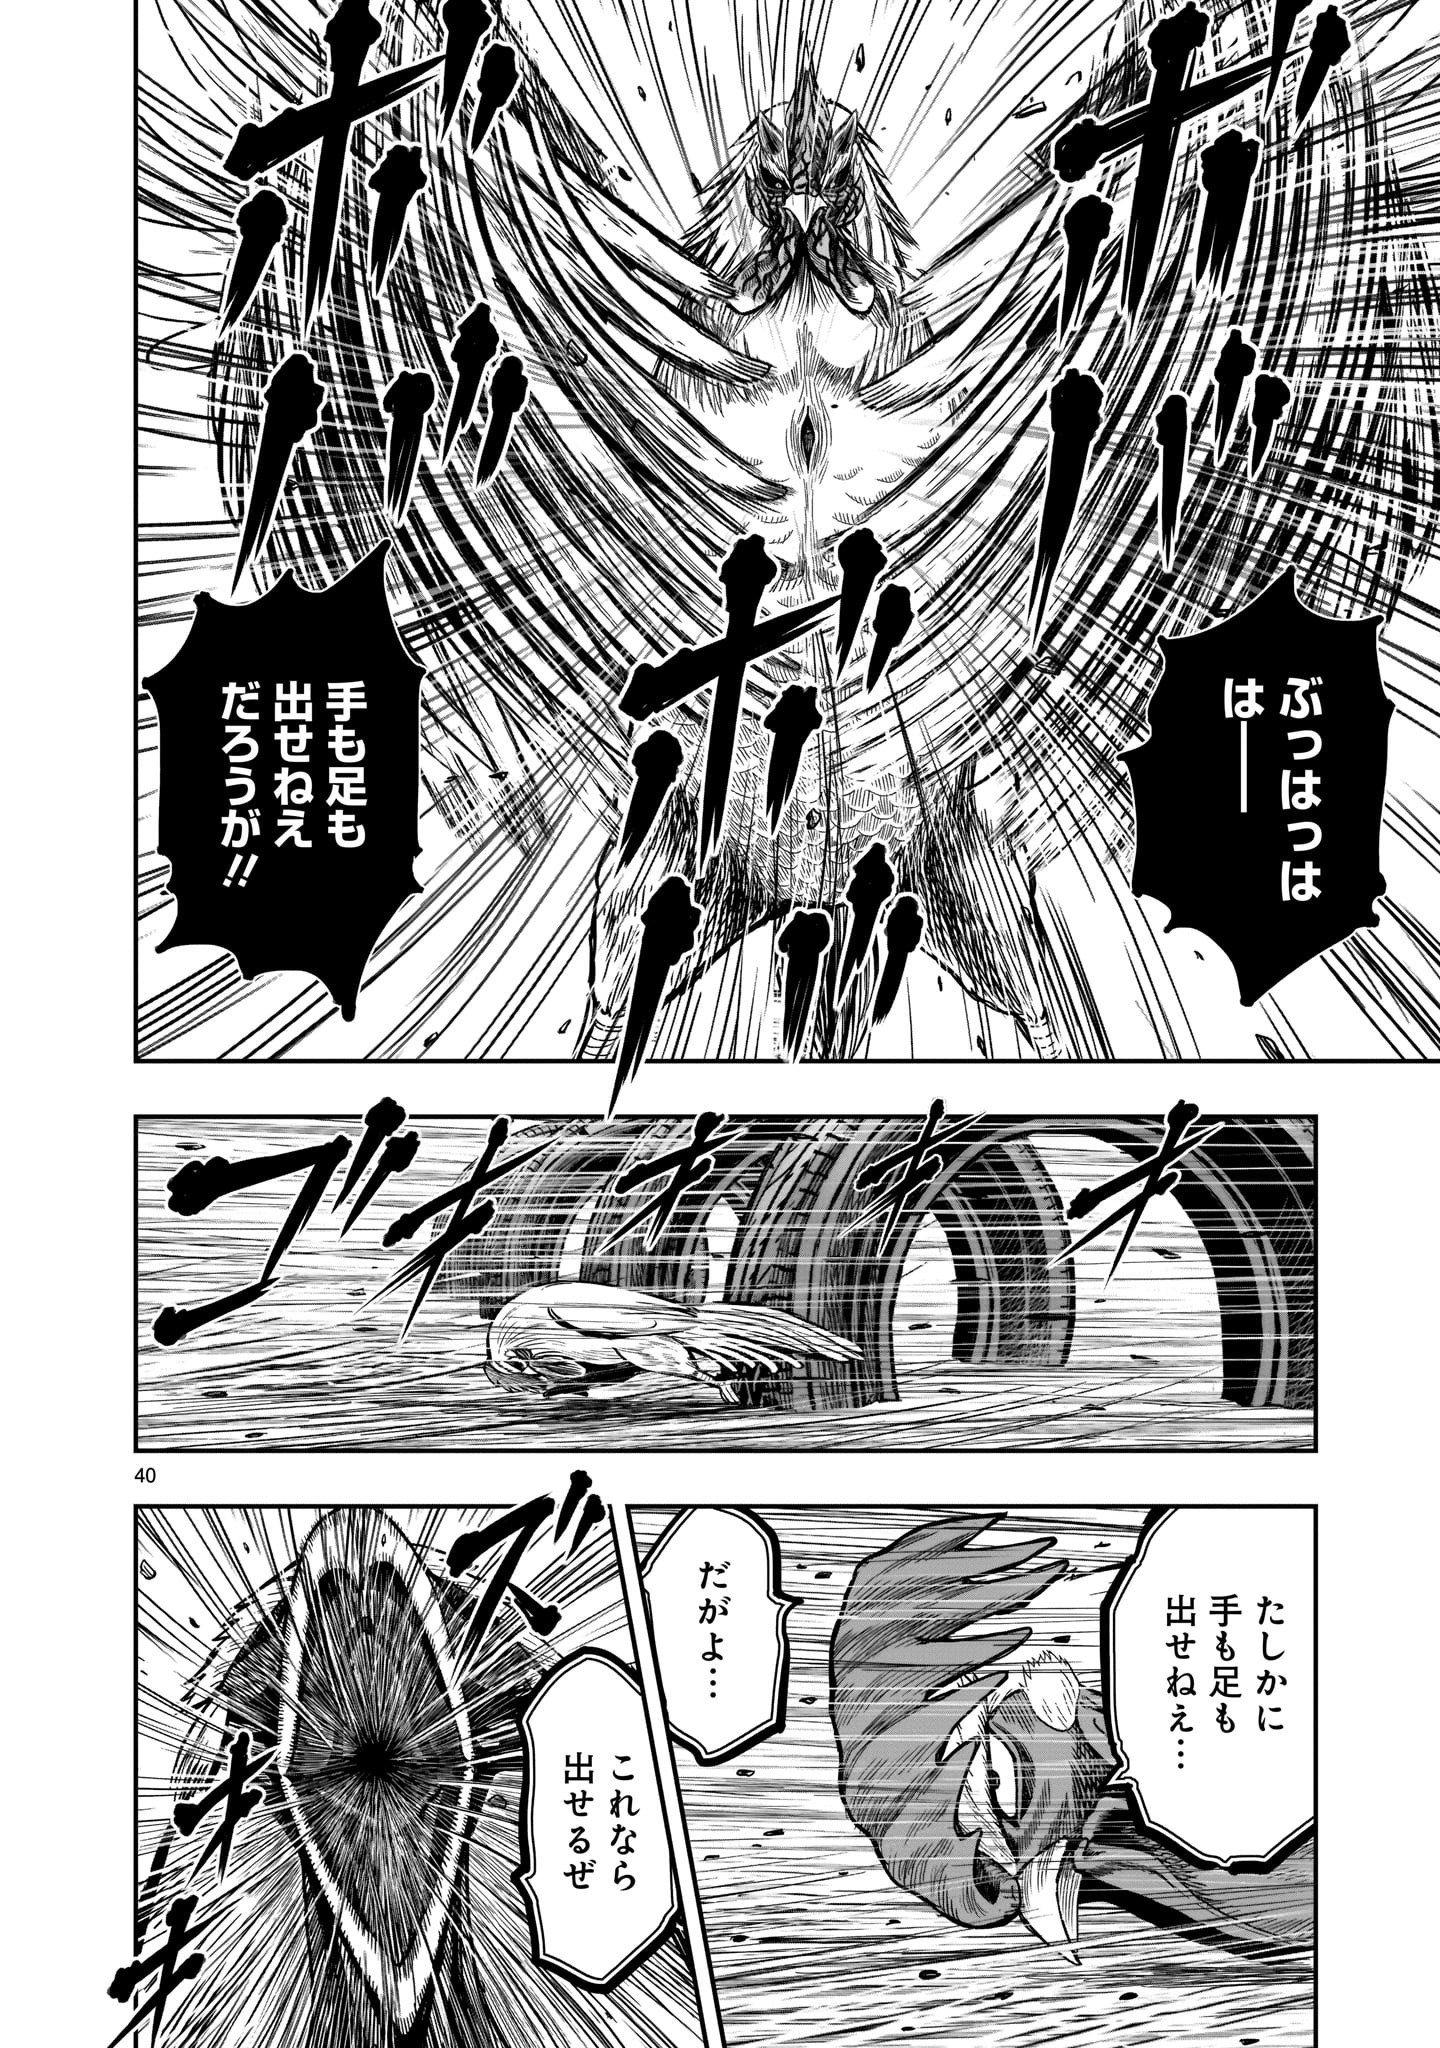 Saint Seiya: Meiou Iden – Dark Wing 第11話 - Page 40